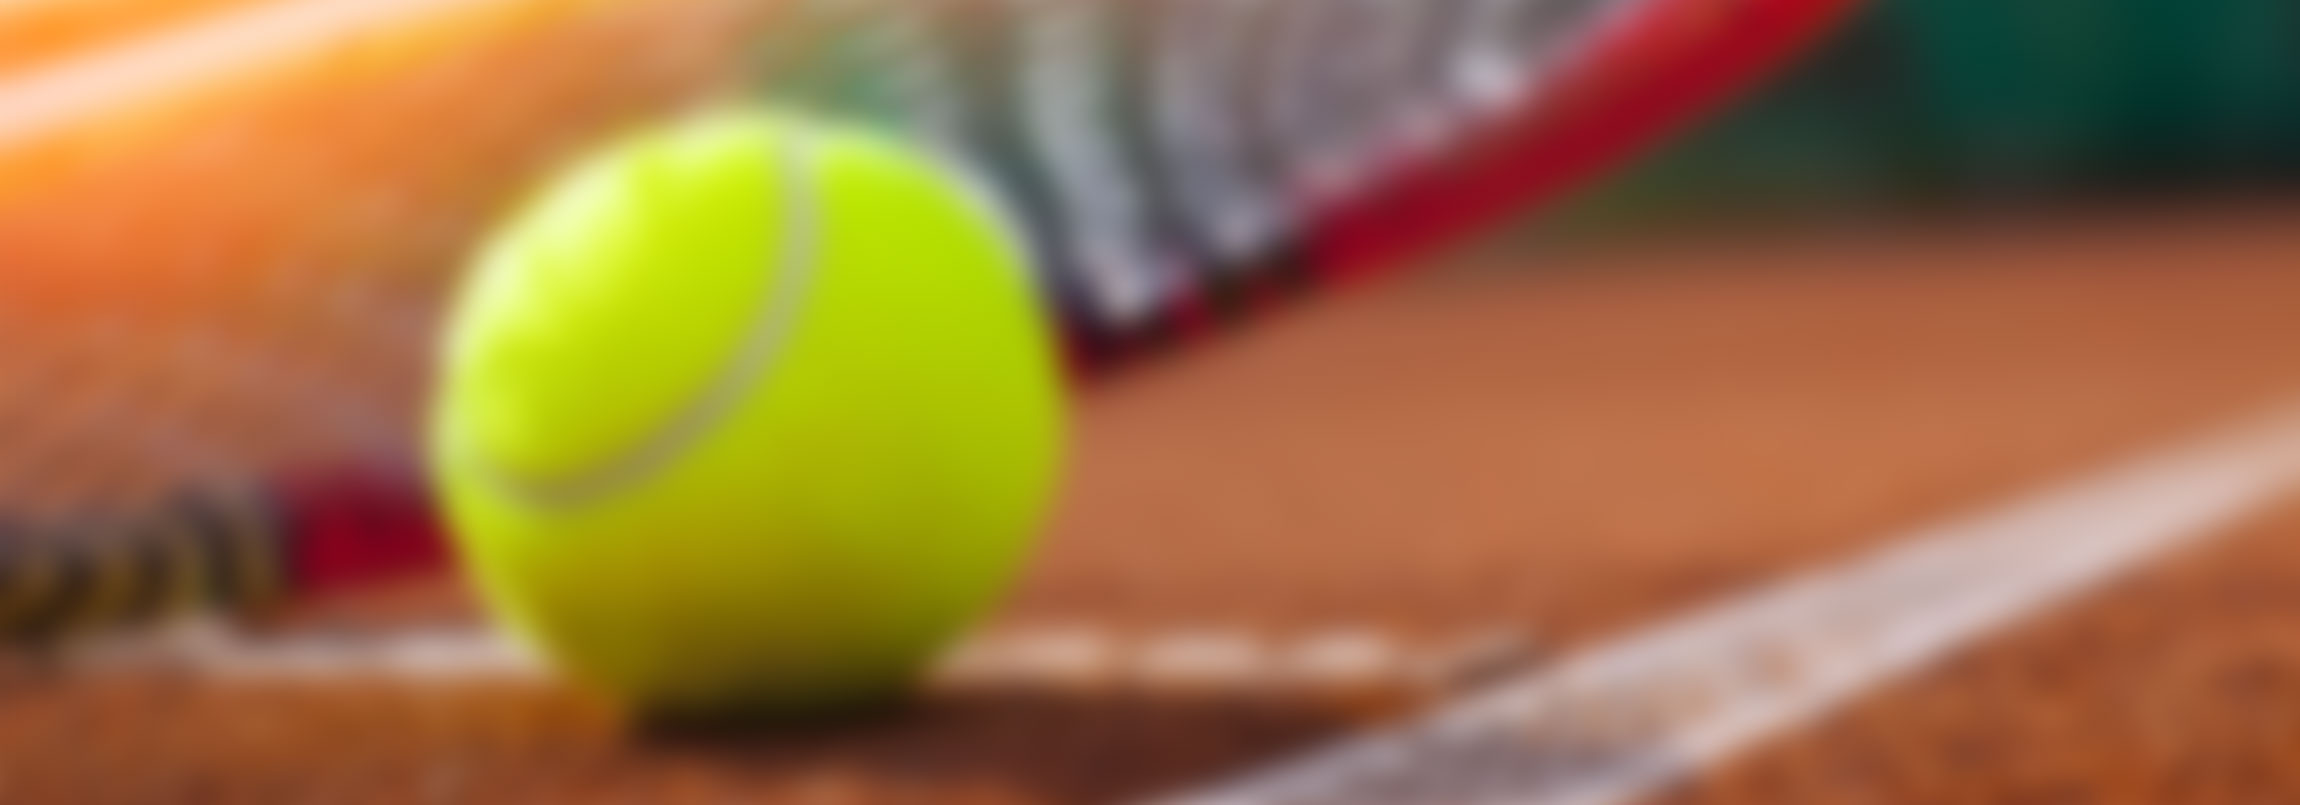 Pointswiss, Racket, Besaitungsmaschine, Tennis, Badminton, Squash, professionell, Schweiz